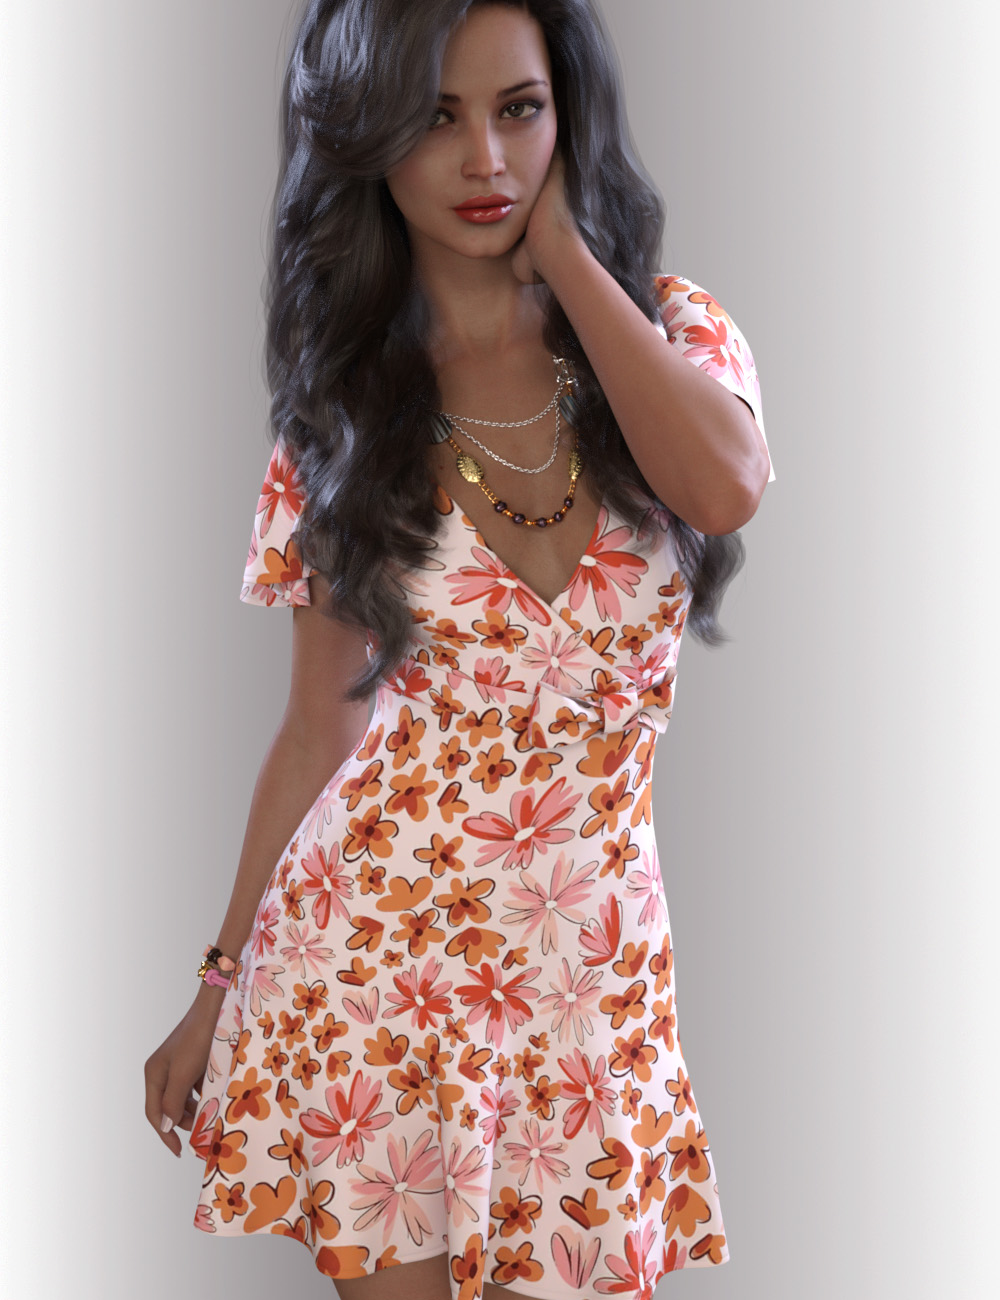 dForce Miranda Dress Outfit for Genesis 8.1 Females by: OnnelArryn, 3D Models by Daz 3D